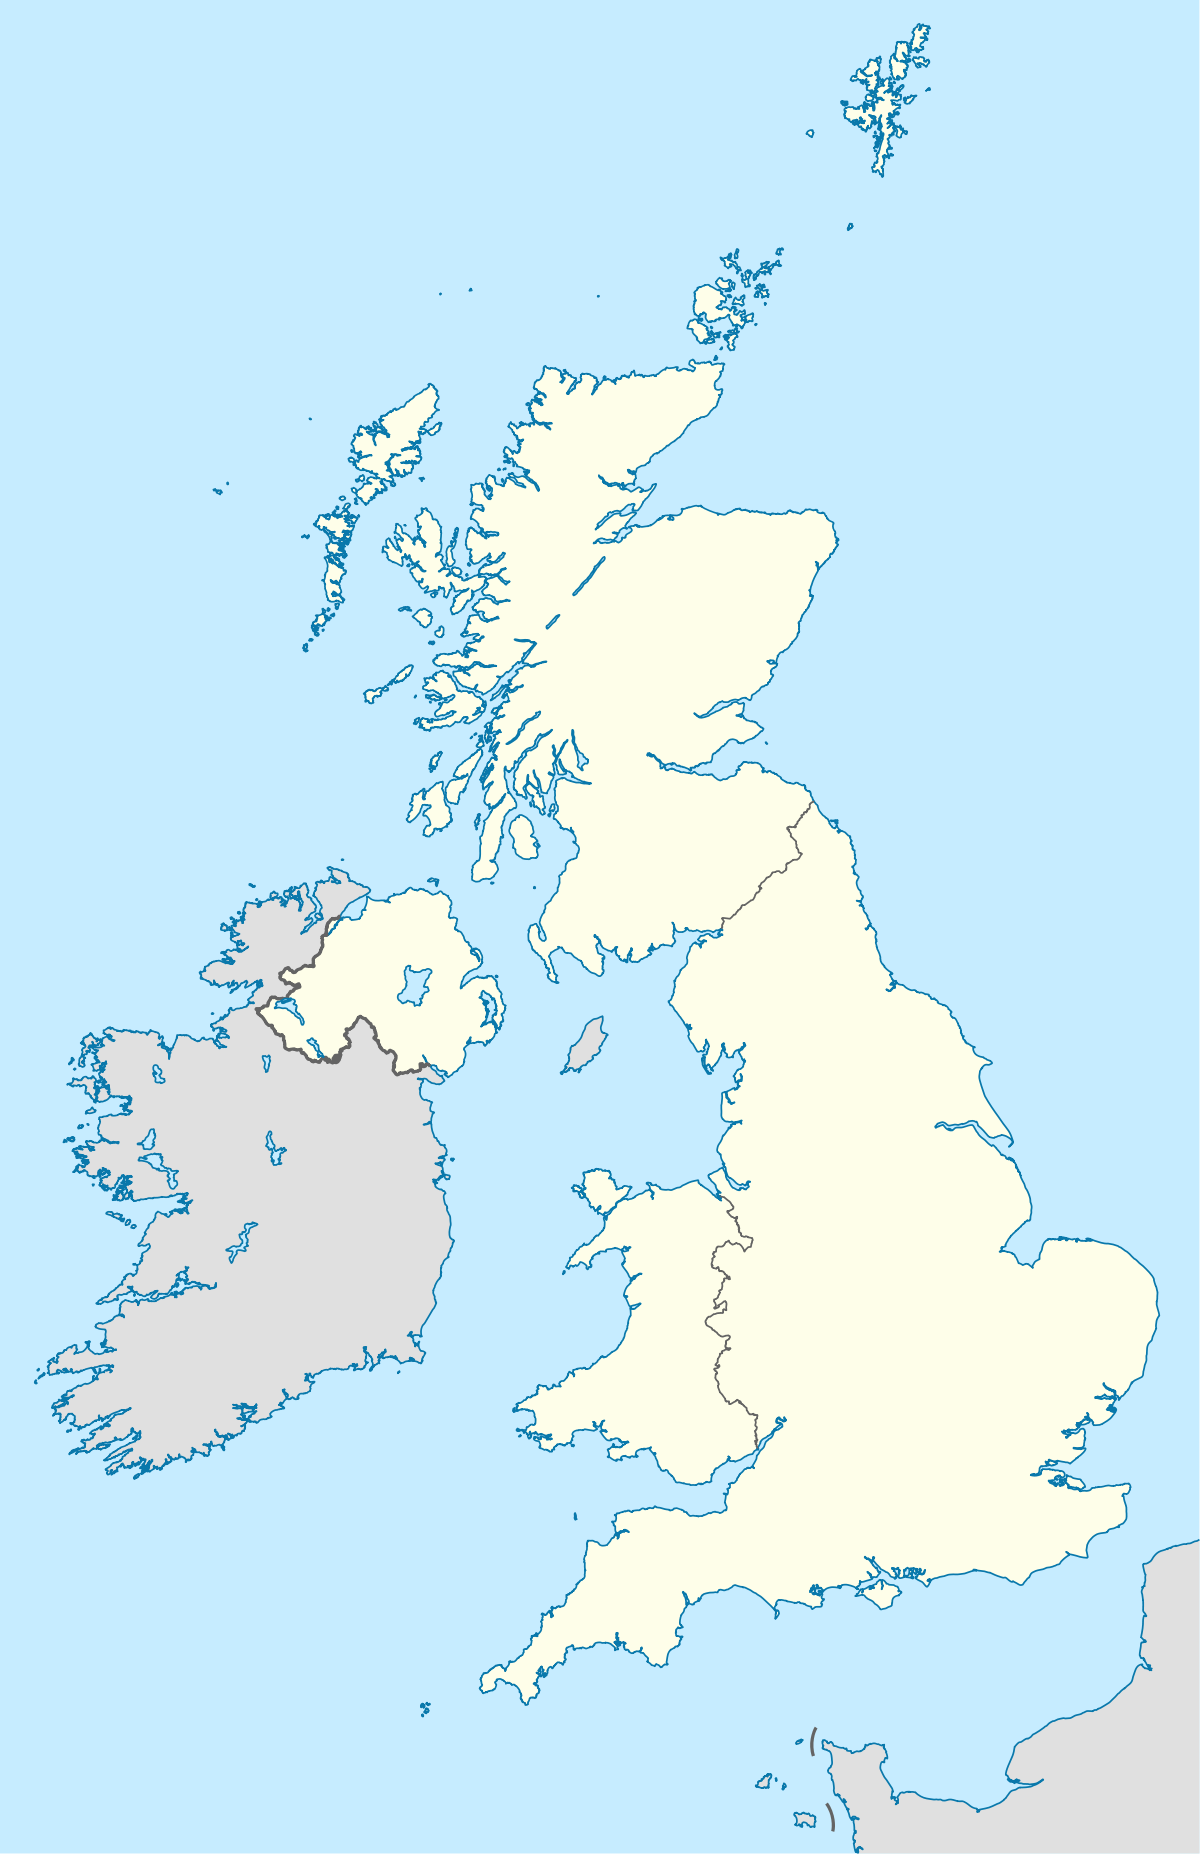 Voir sur la carte : Royaume-Uni